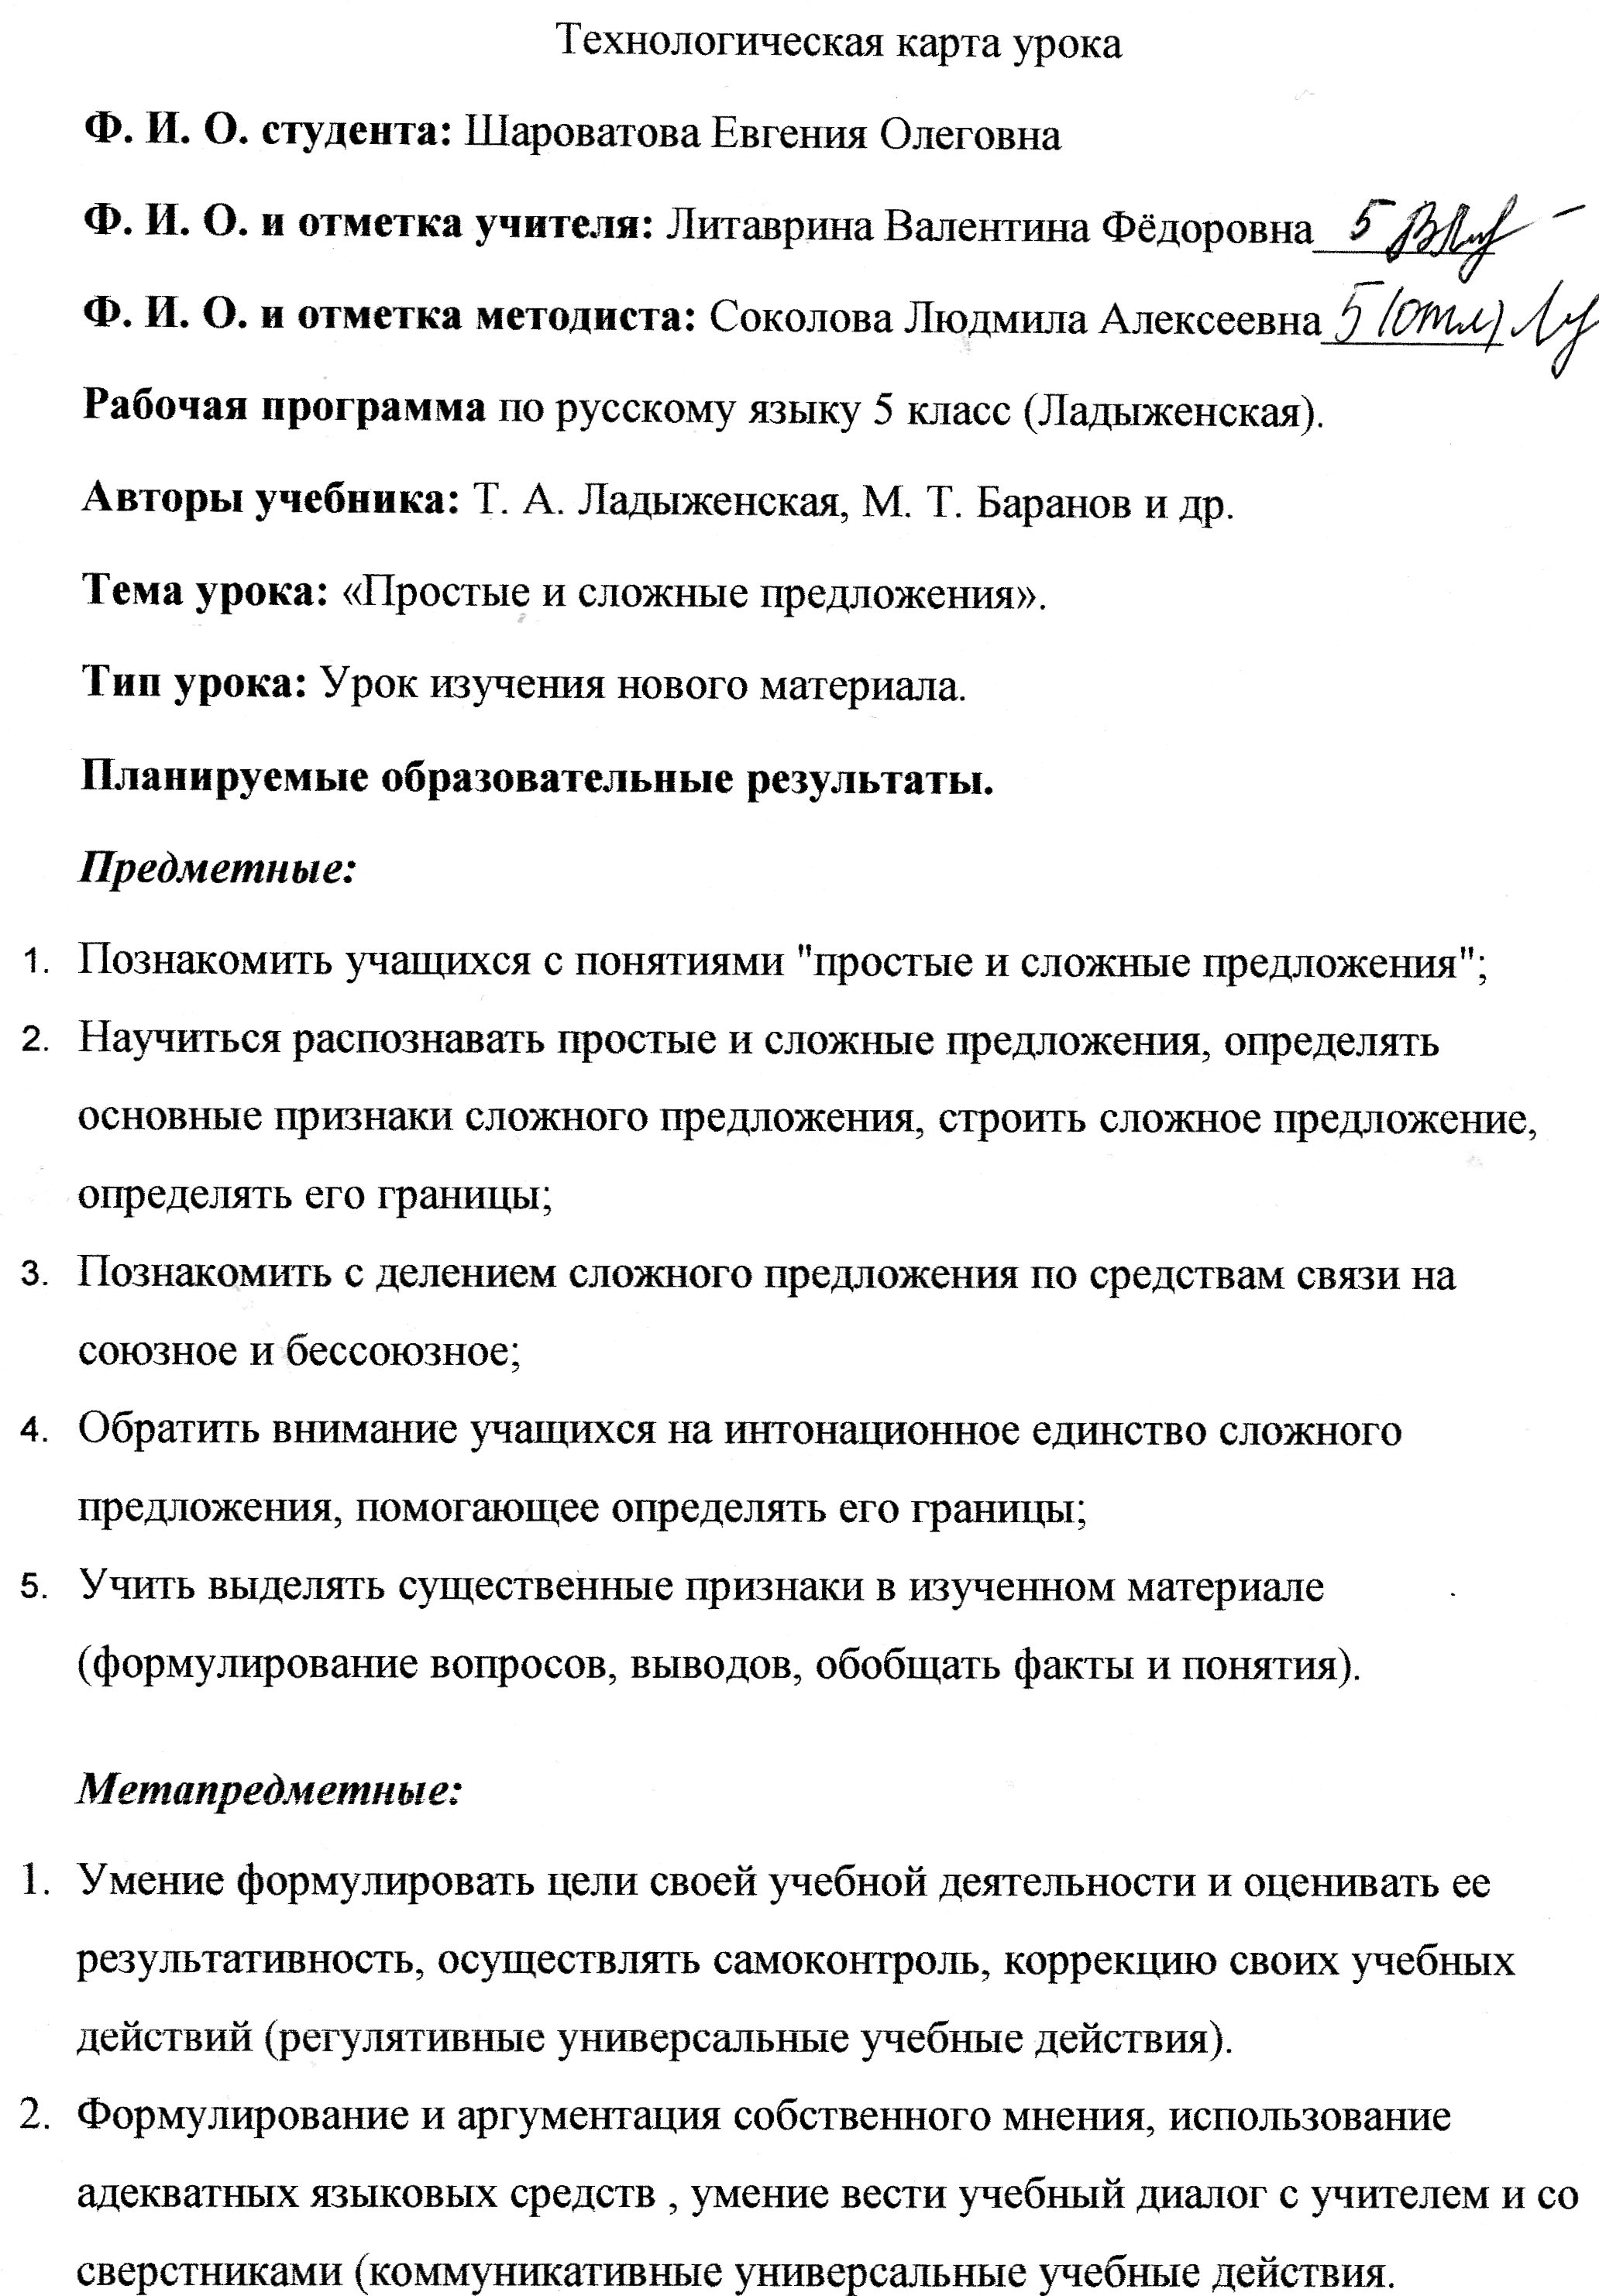 Технологическая карта (конспект урока) по русскому языку на тему Простые и сложные предложения